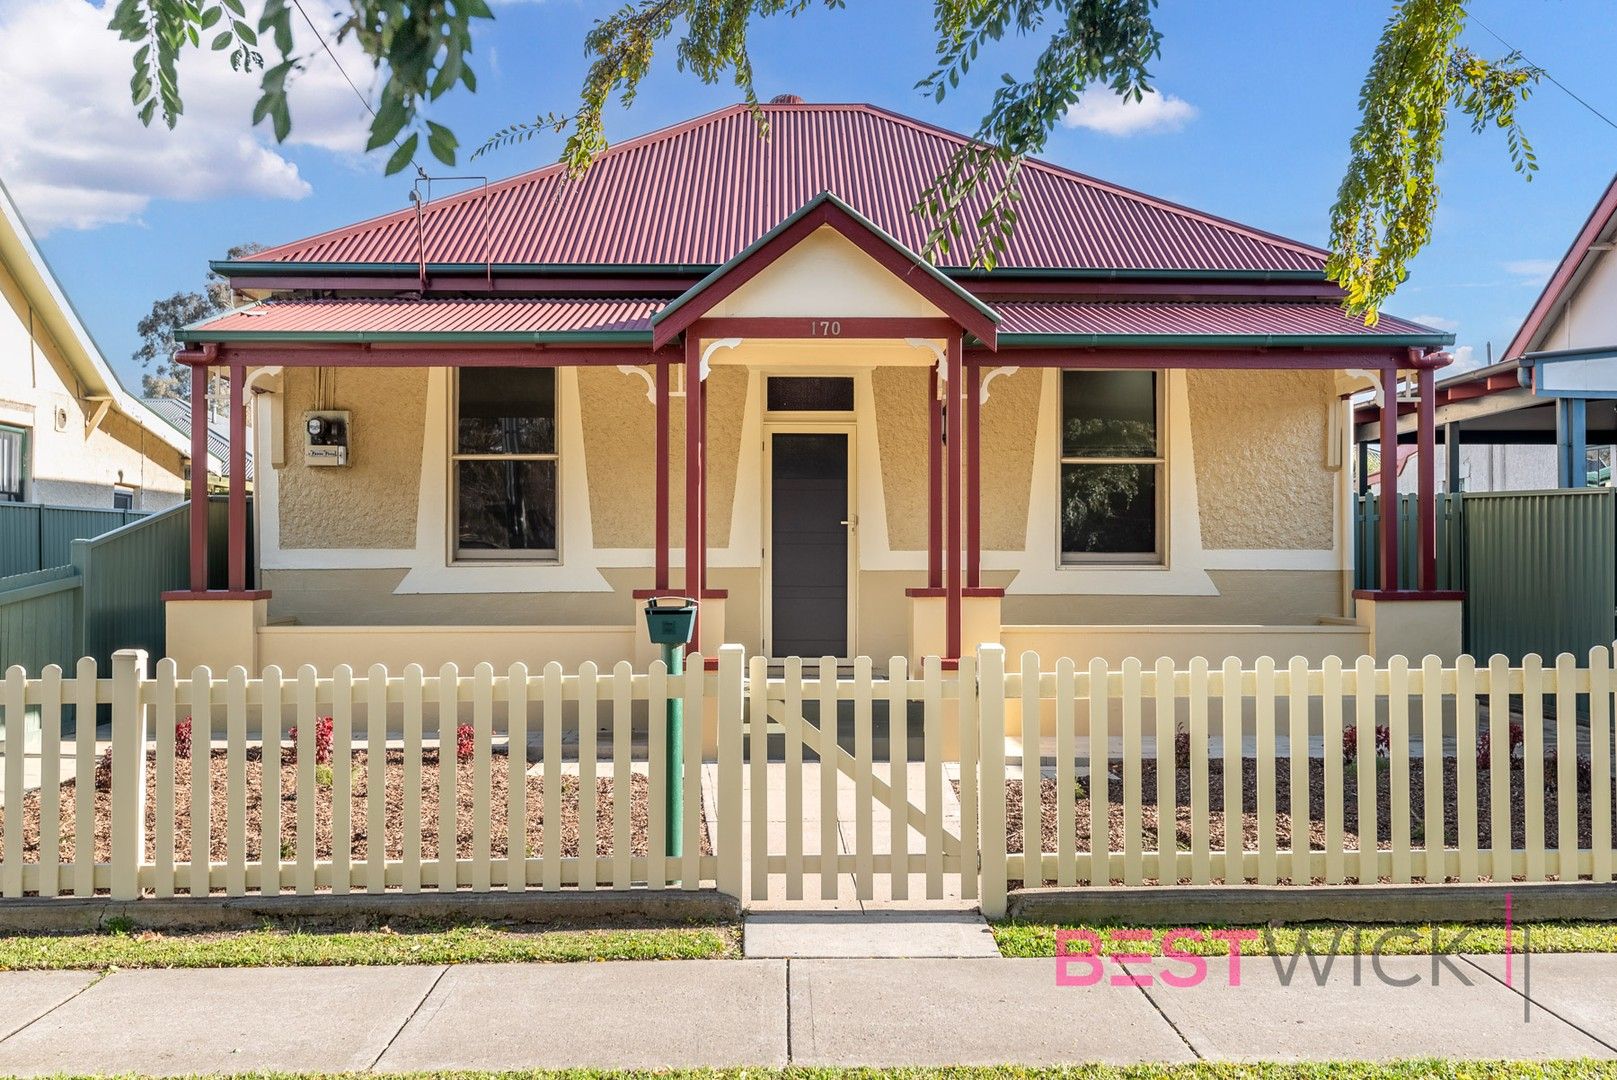 4 bedrooms House in 170 Lambert Street BATHURST NSW, 2795